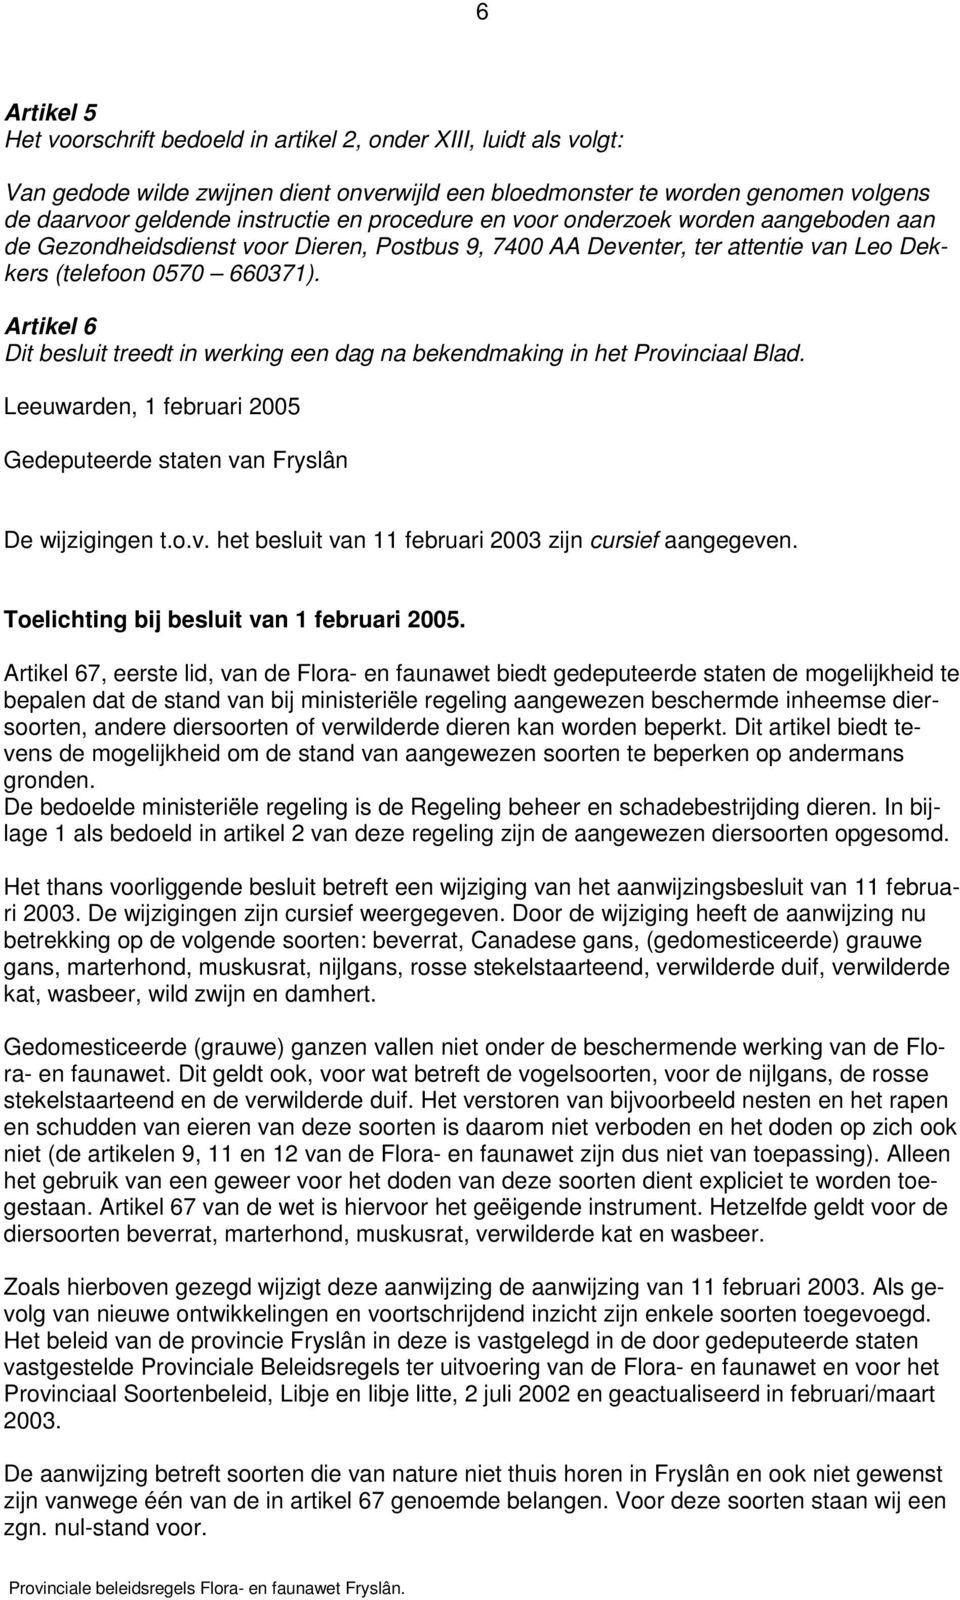 Artikel 6 Dit besluit treedt in werking een dag na bekendmaking in het Provinciaal Blad. Leeuwarden, 1 februari 2005 Gedeputeerde staten van Fryslân De wijzigingen t.o.v. het besluit van 11 februari 2003 zijn cursief aangegeven.